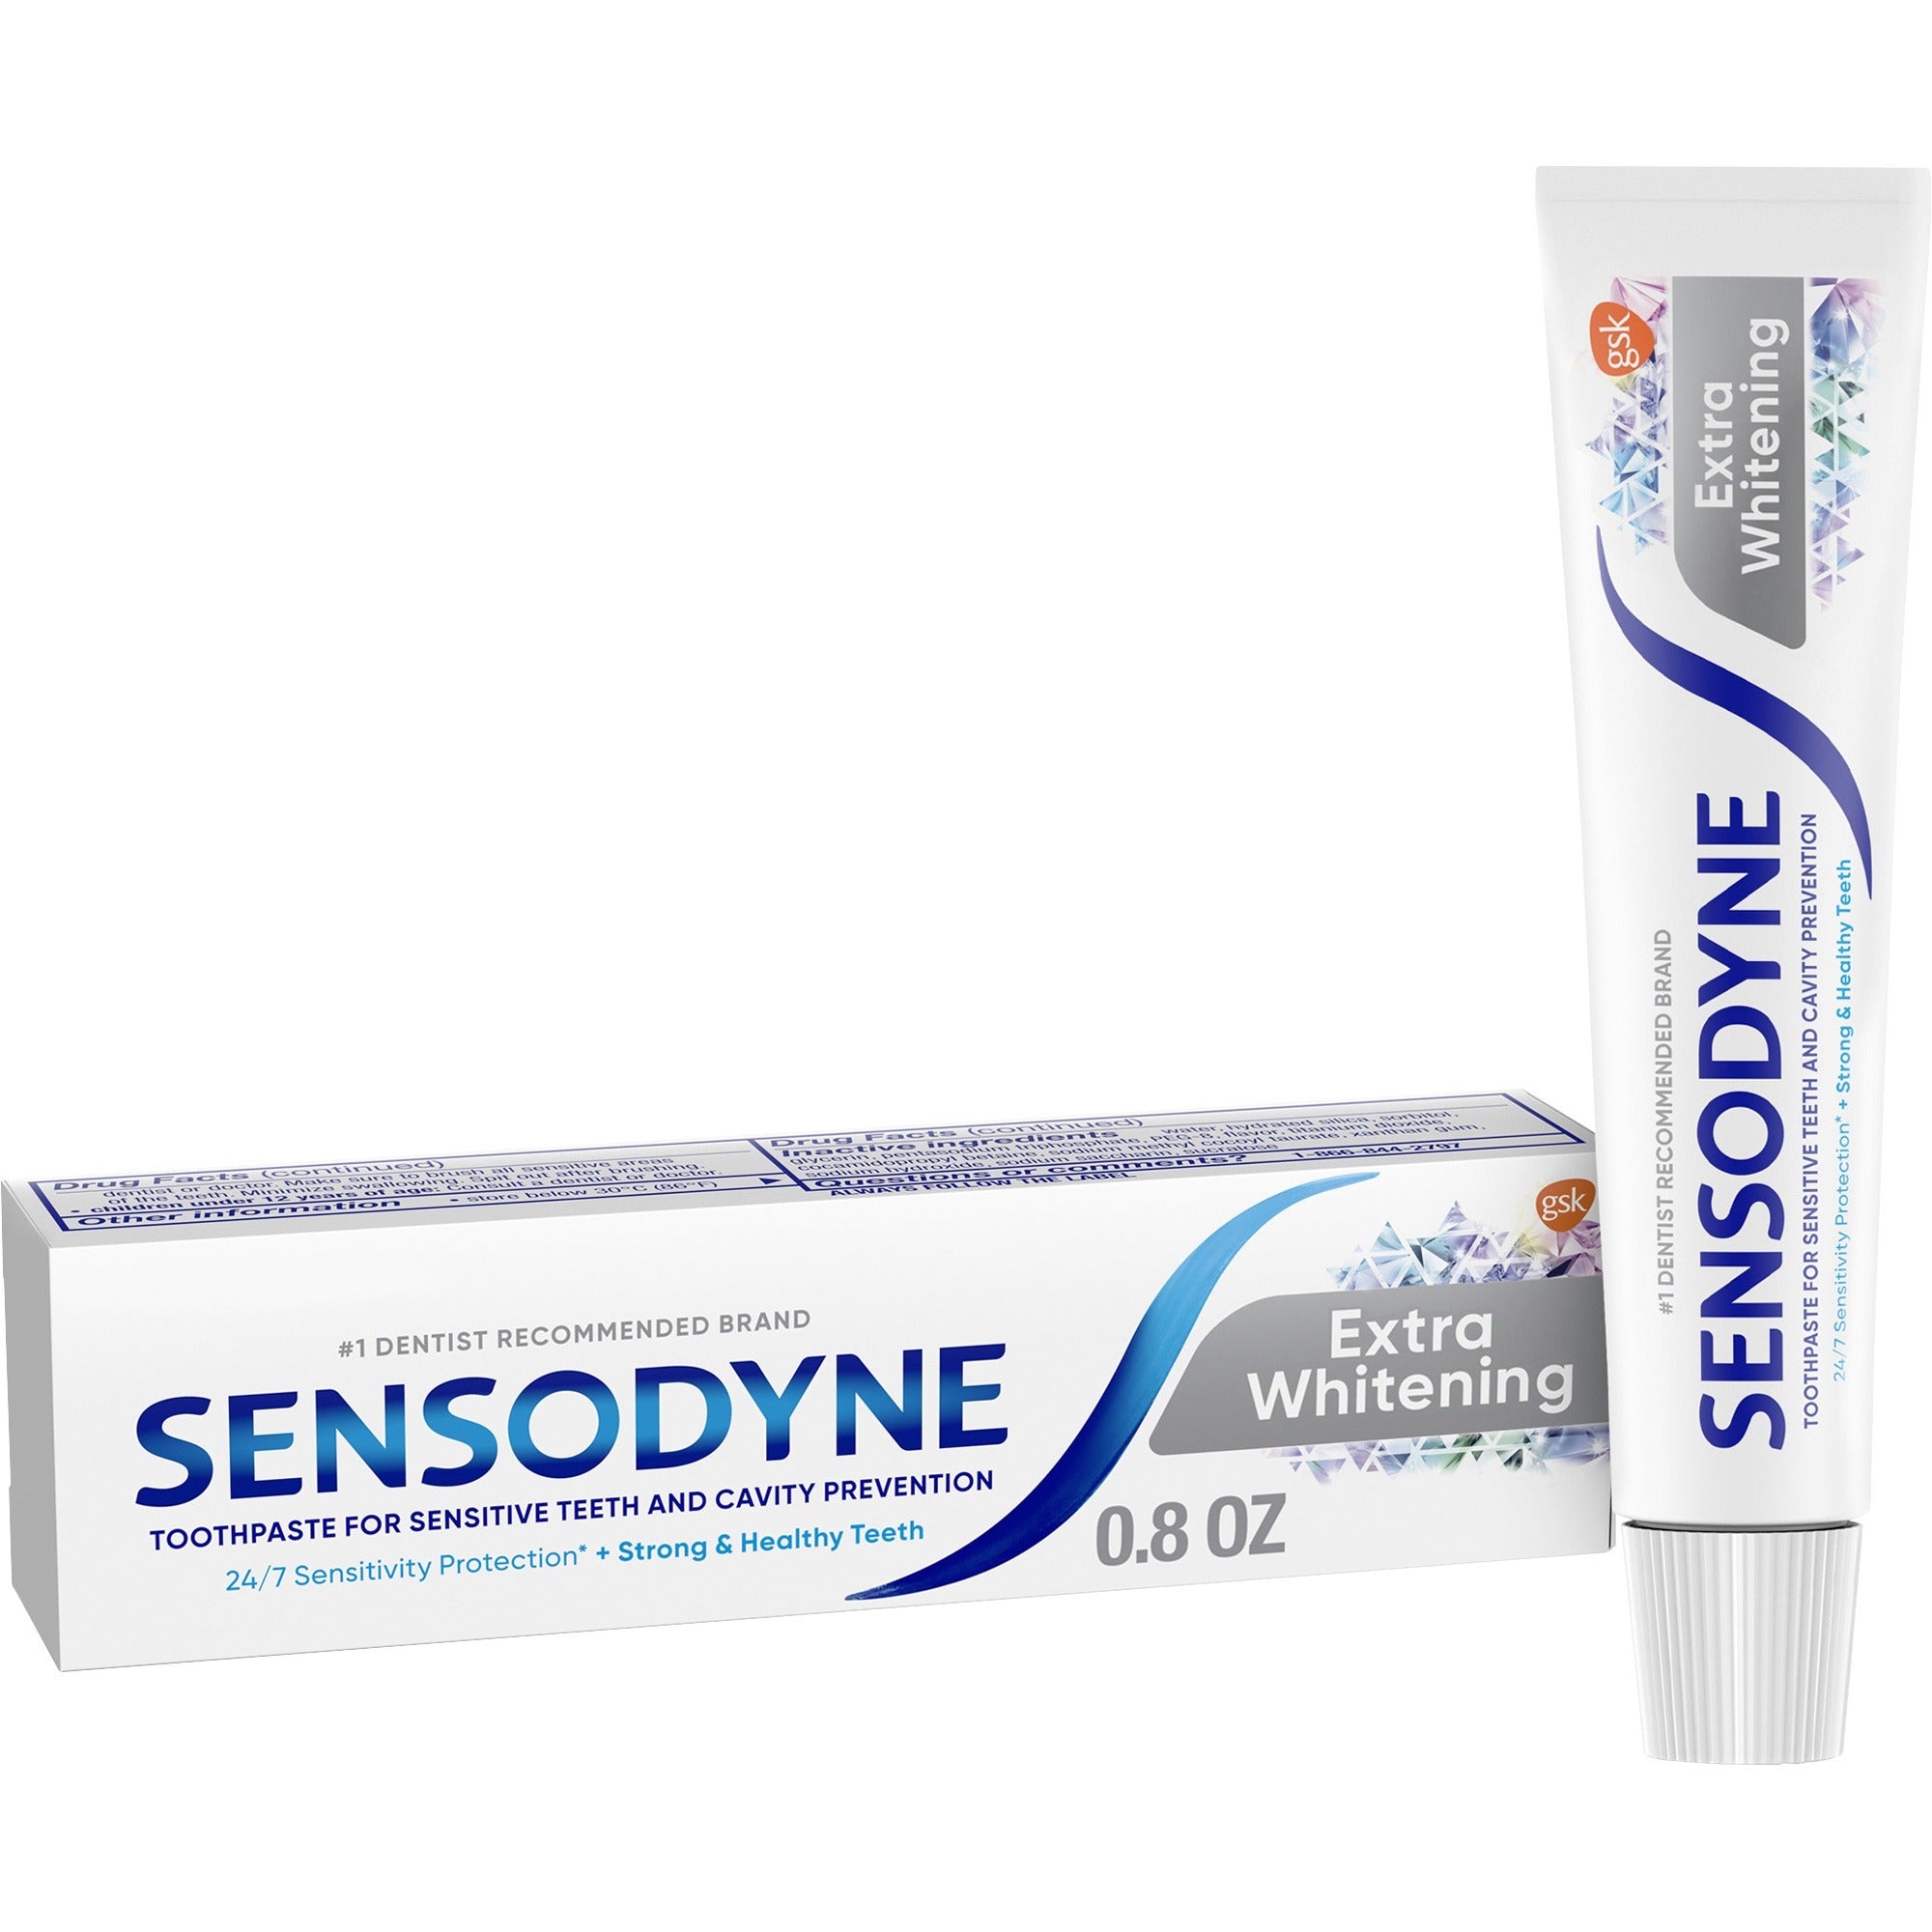 Sensodyne Extra Whitening Toothpaste - 36 / Carton - White - 1